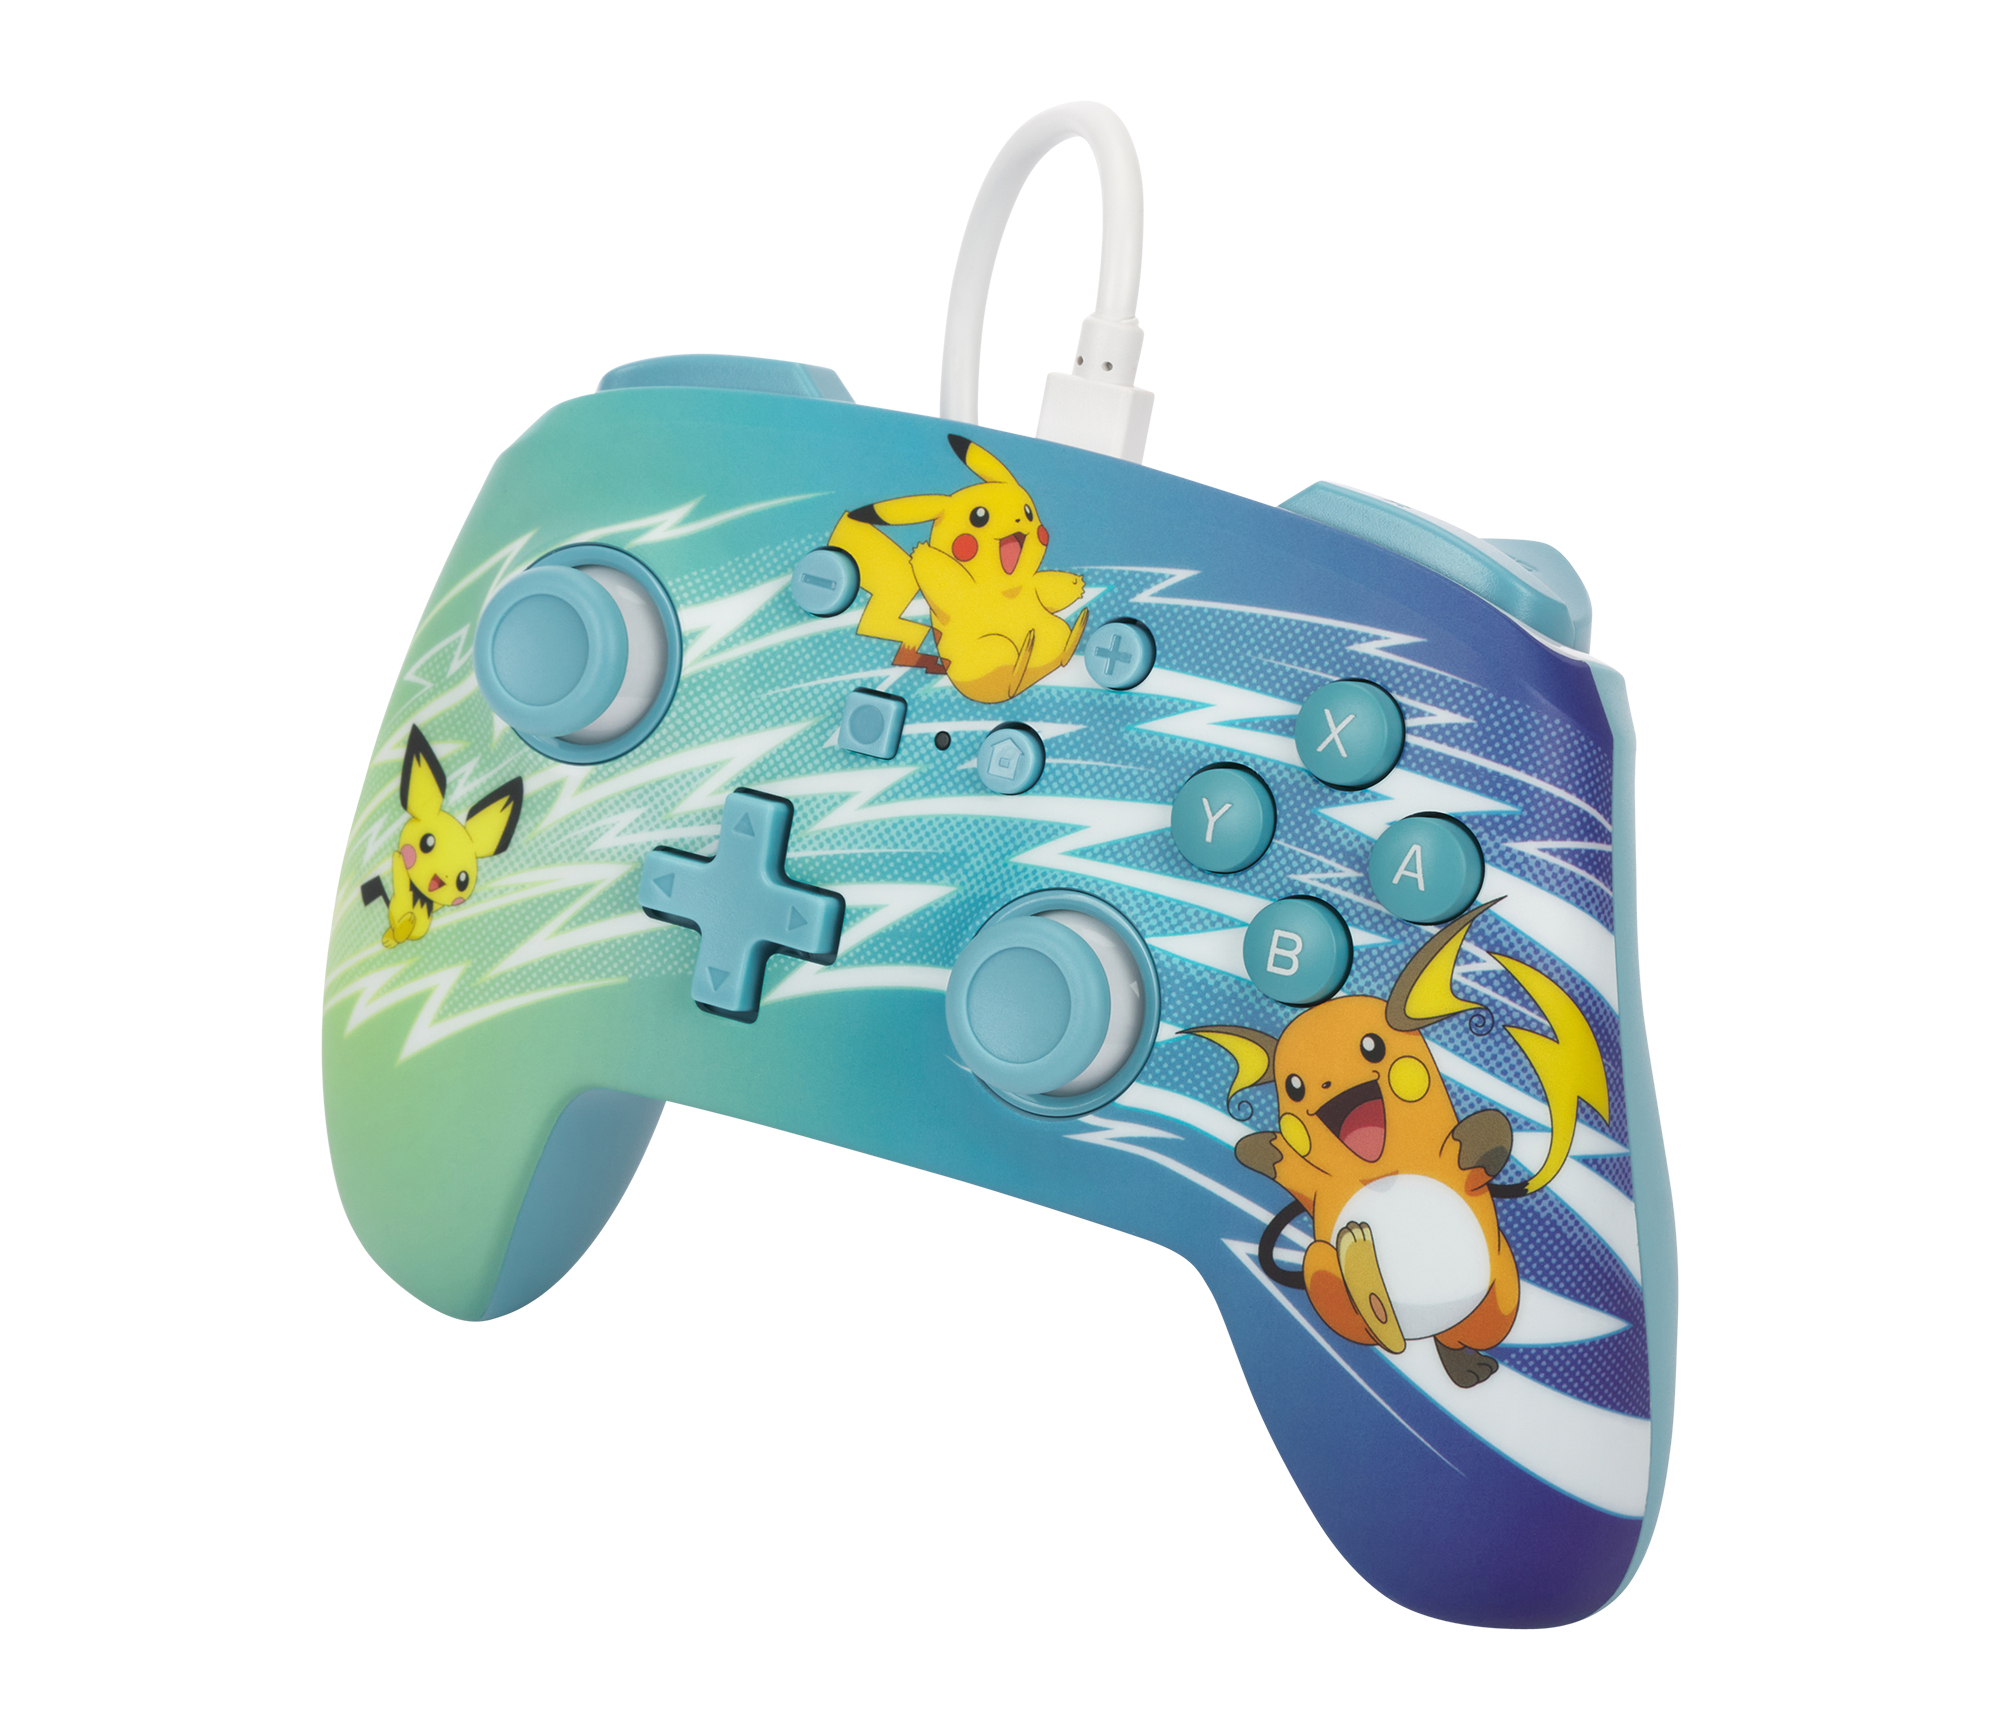 POWERA Pikachu-Evolution - kabelgebundener Controller für Mehrfarbig Nintendo Switch